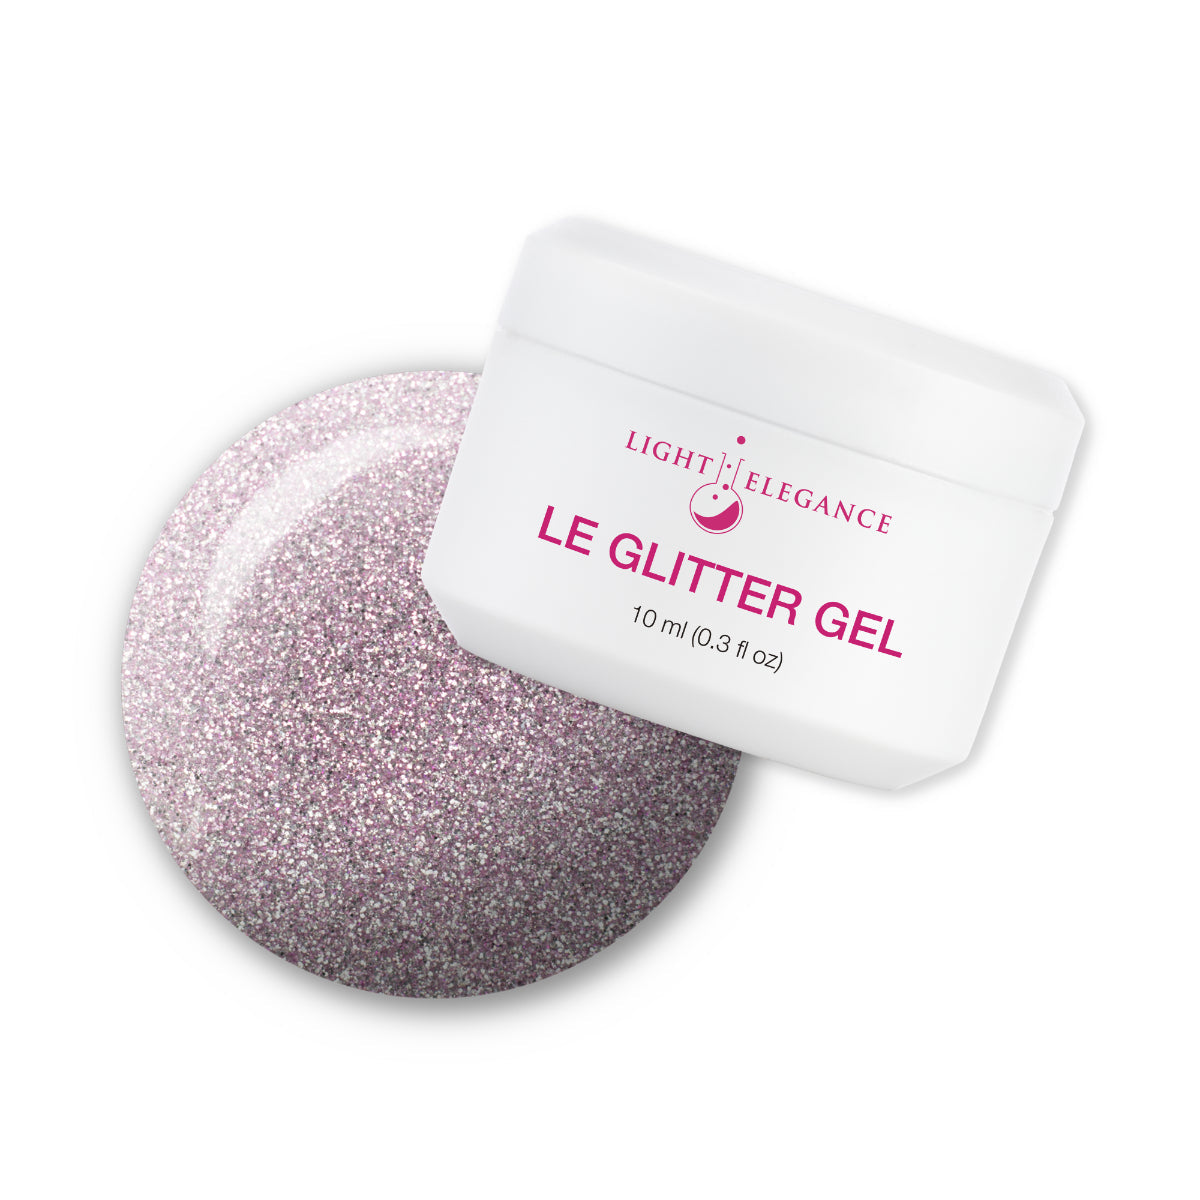 Light Elegance Glitter Gel - All Eyes on Me :: New Packaging